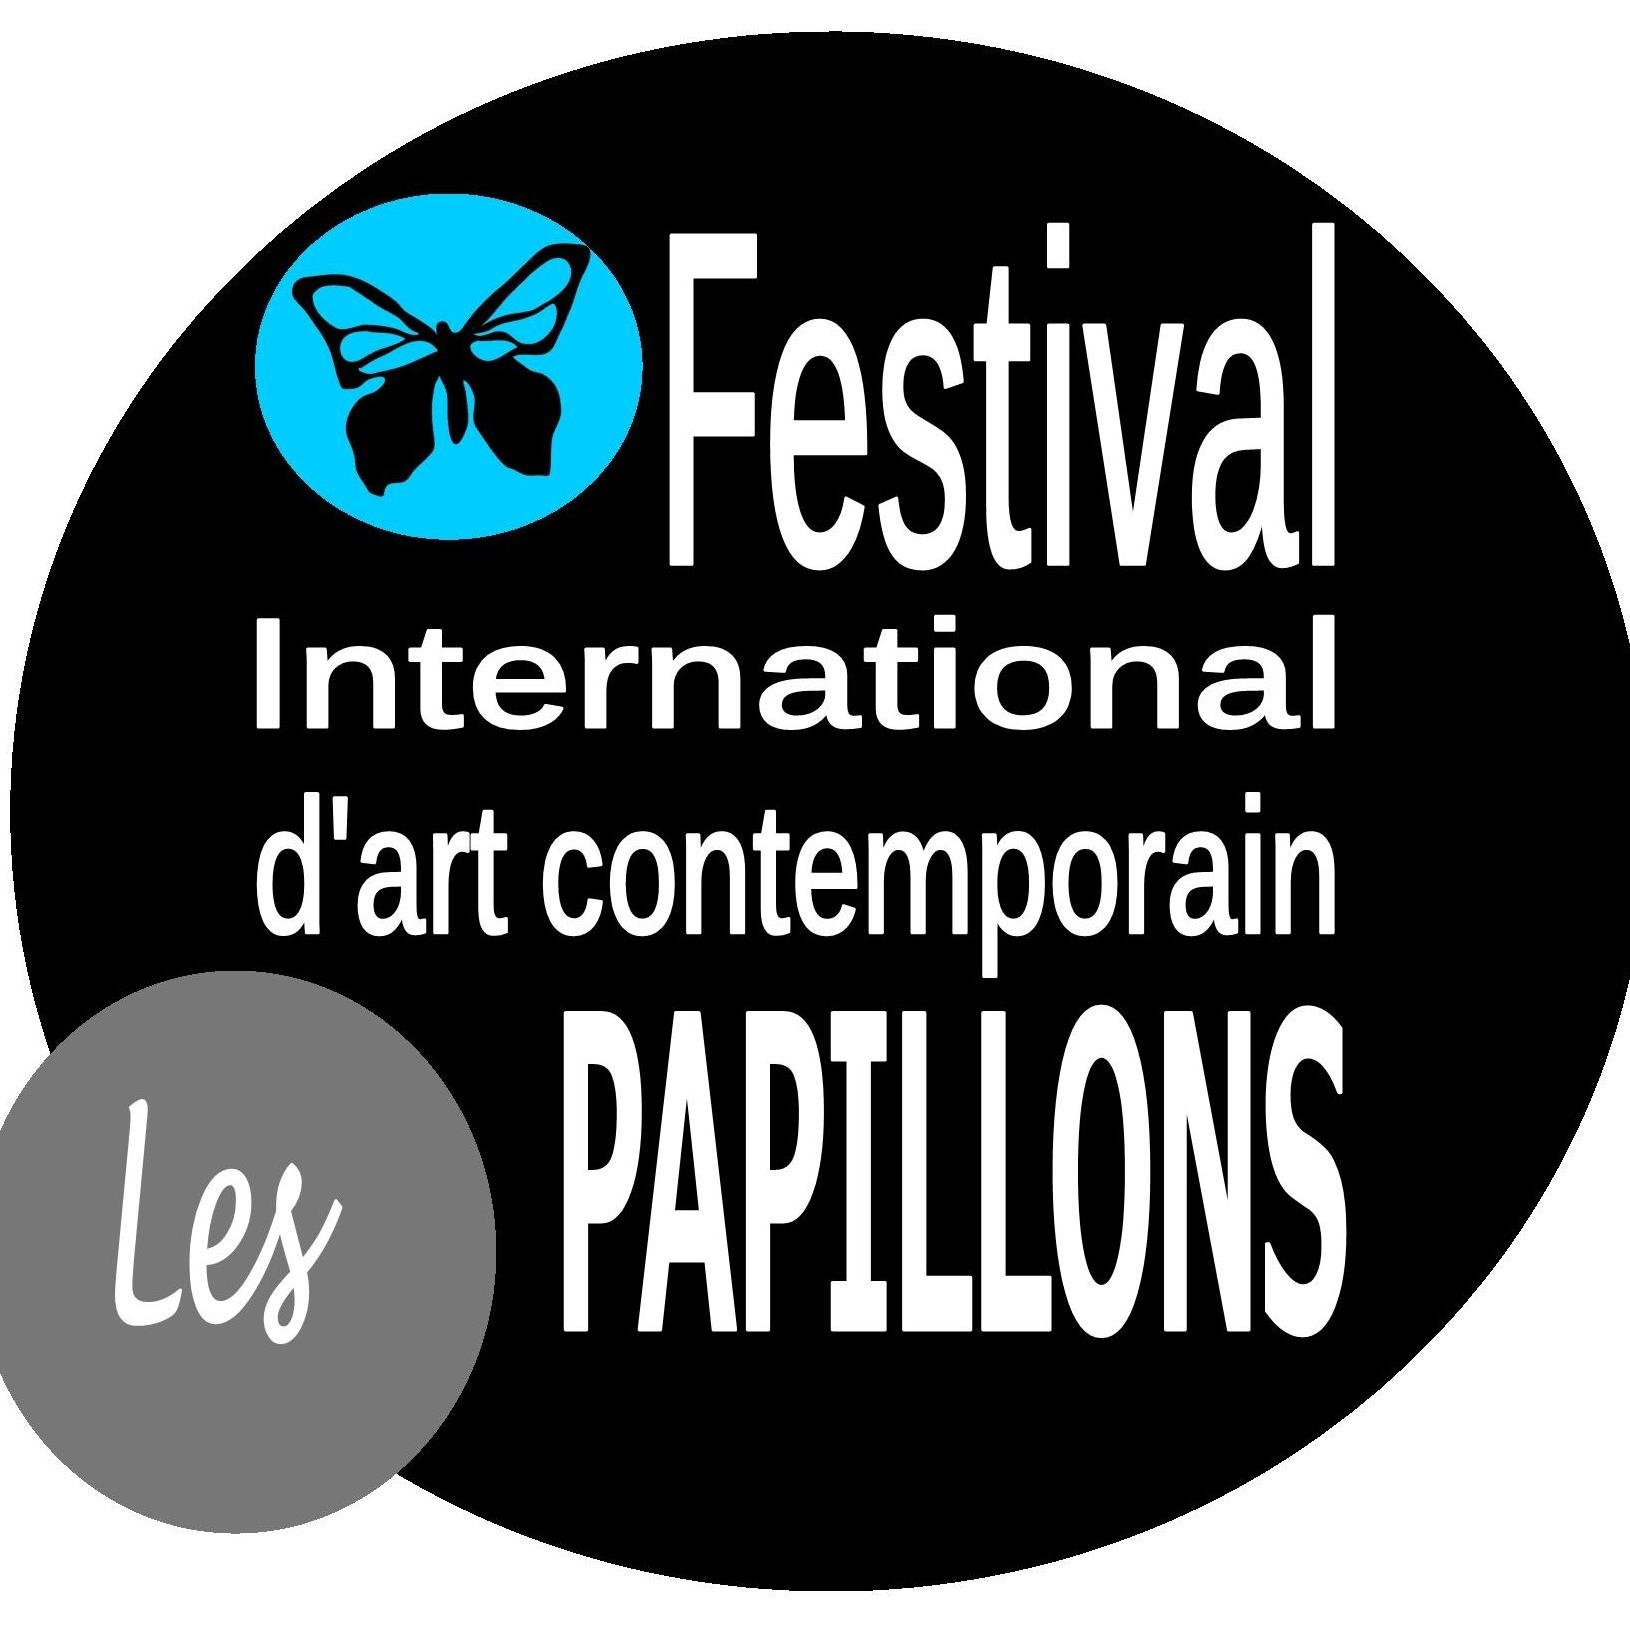 LES PAPILLONS Festival international d'art contemporain à Carpentras
juillet août 
Plus de 200 toiles géantes dans le centre ville.